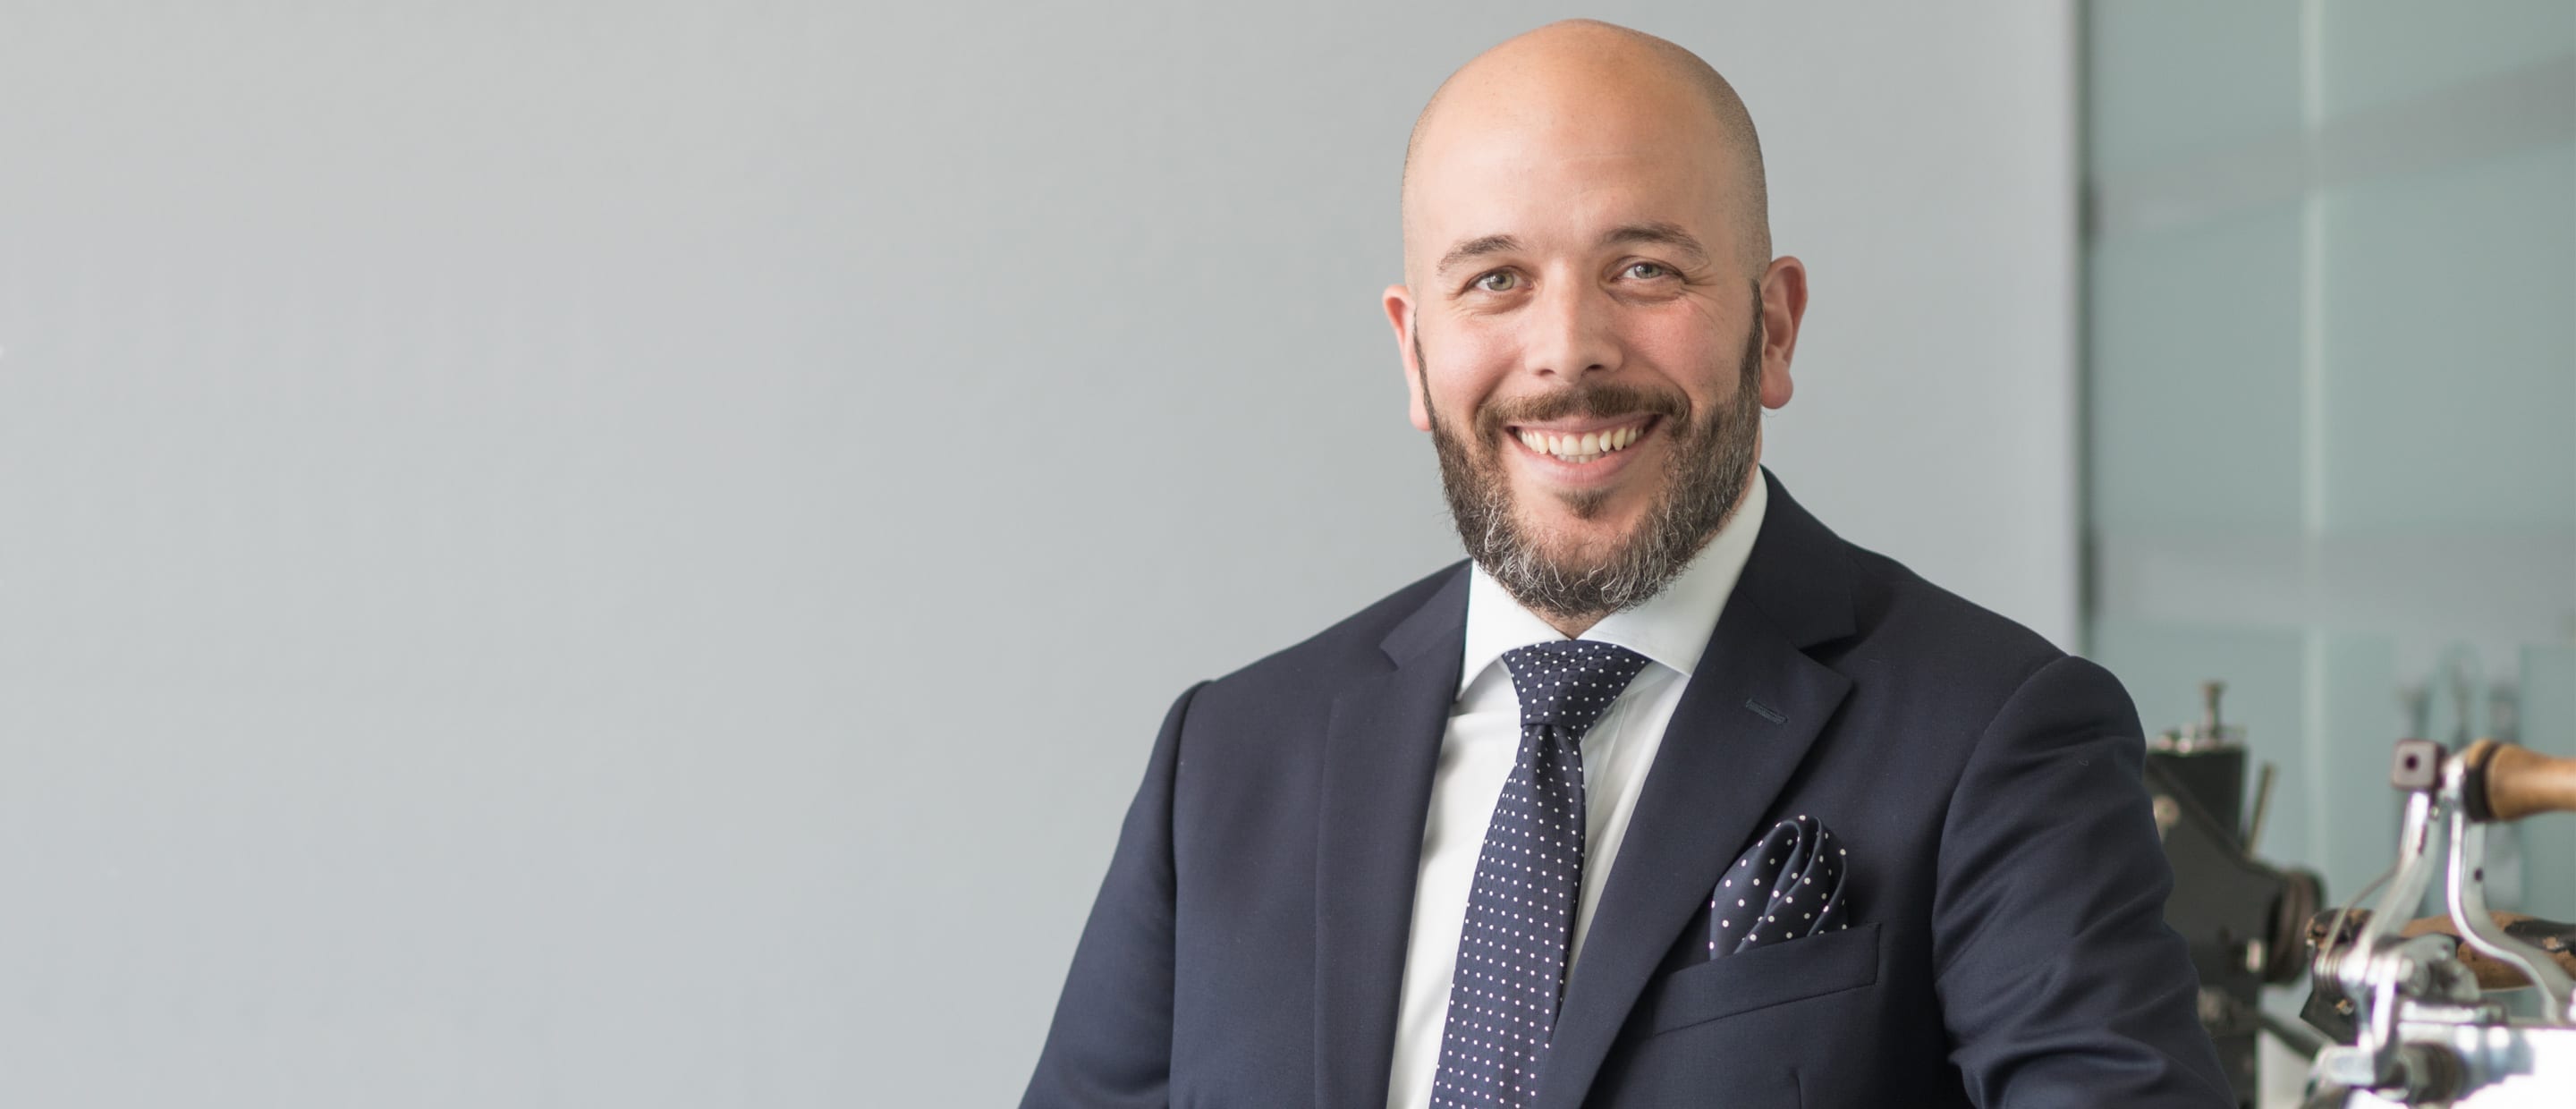 Profilfoto Pino Vastano, CEO und Gründer von Corporess AG.